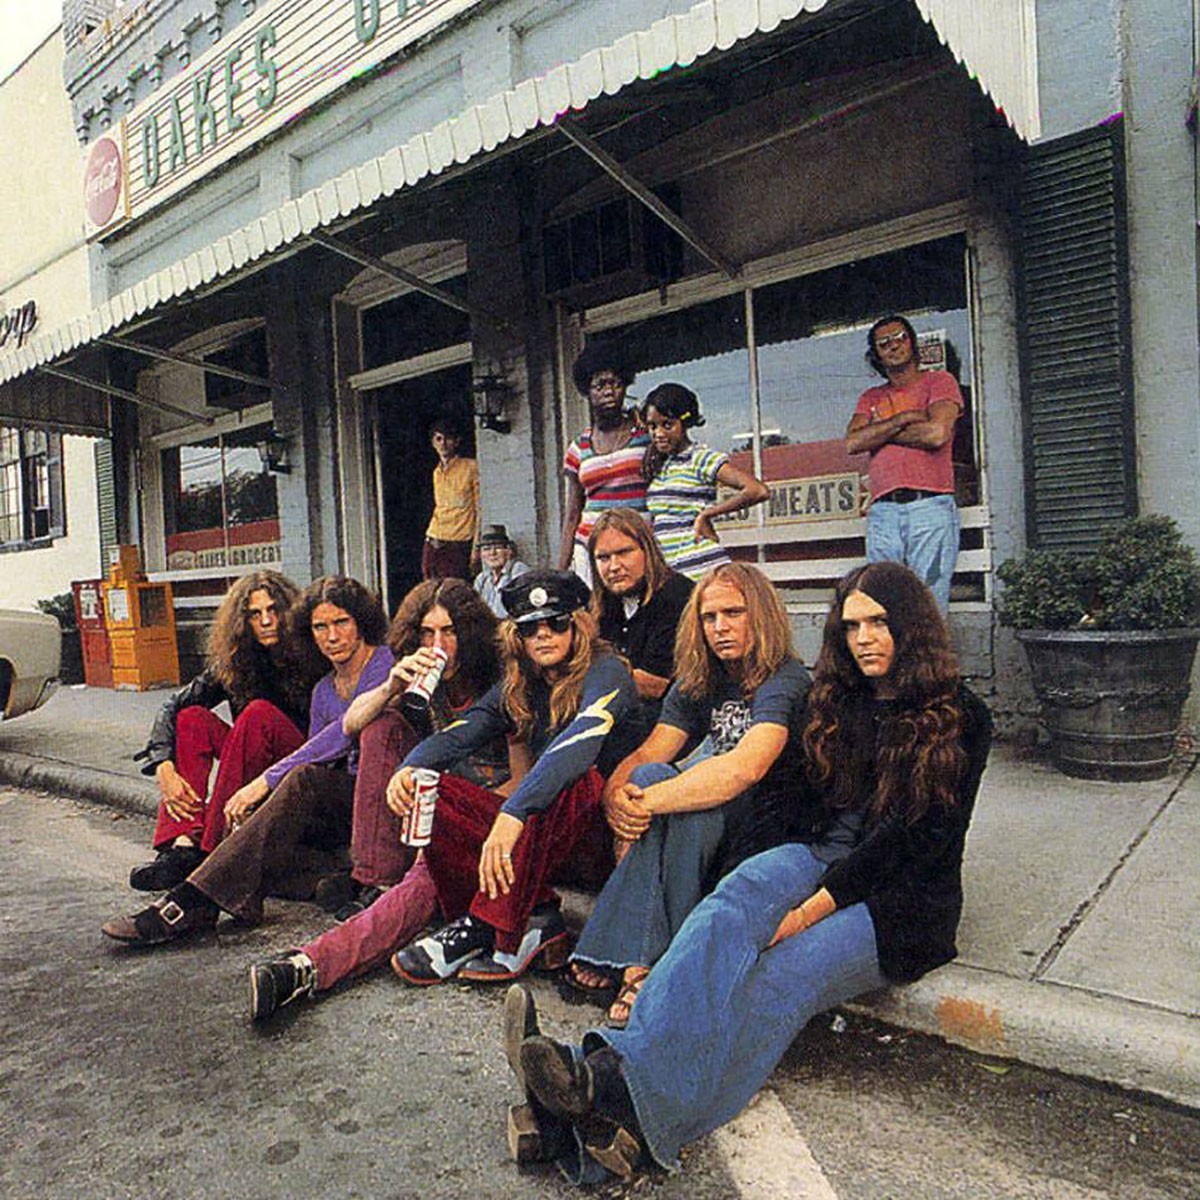 Lynyrd Skynyrd en 1973. Membres du groupe (assis à gauche) : Allen Collins, Billy Powell, Bob Burns, Leon Wilkeson, Ed King (assis à l'arrière), Ronnie Van Zant et Gary Rossington.